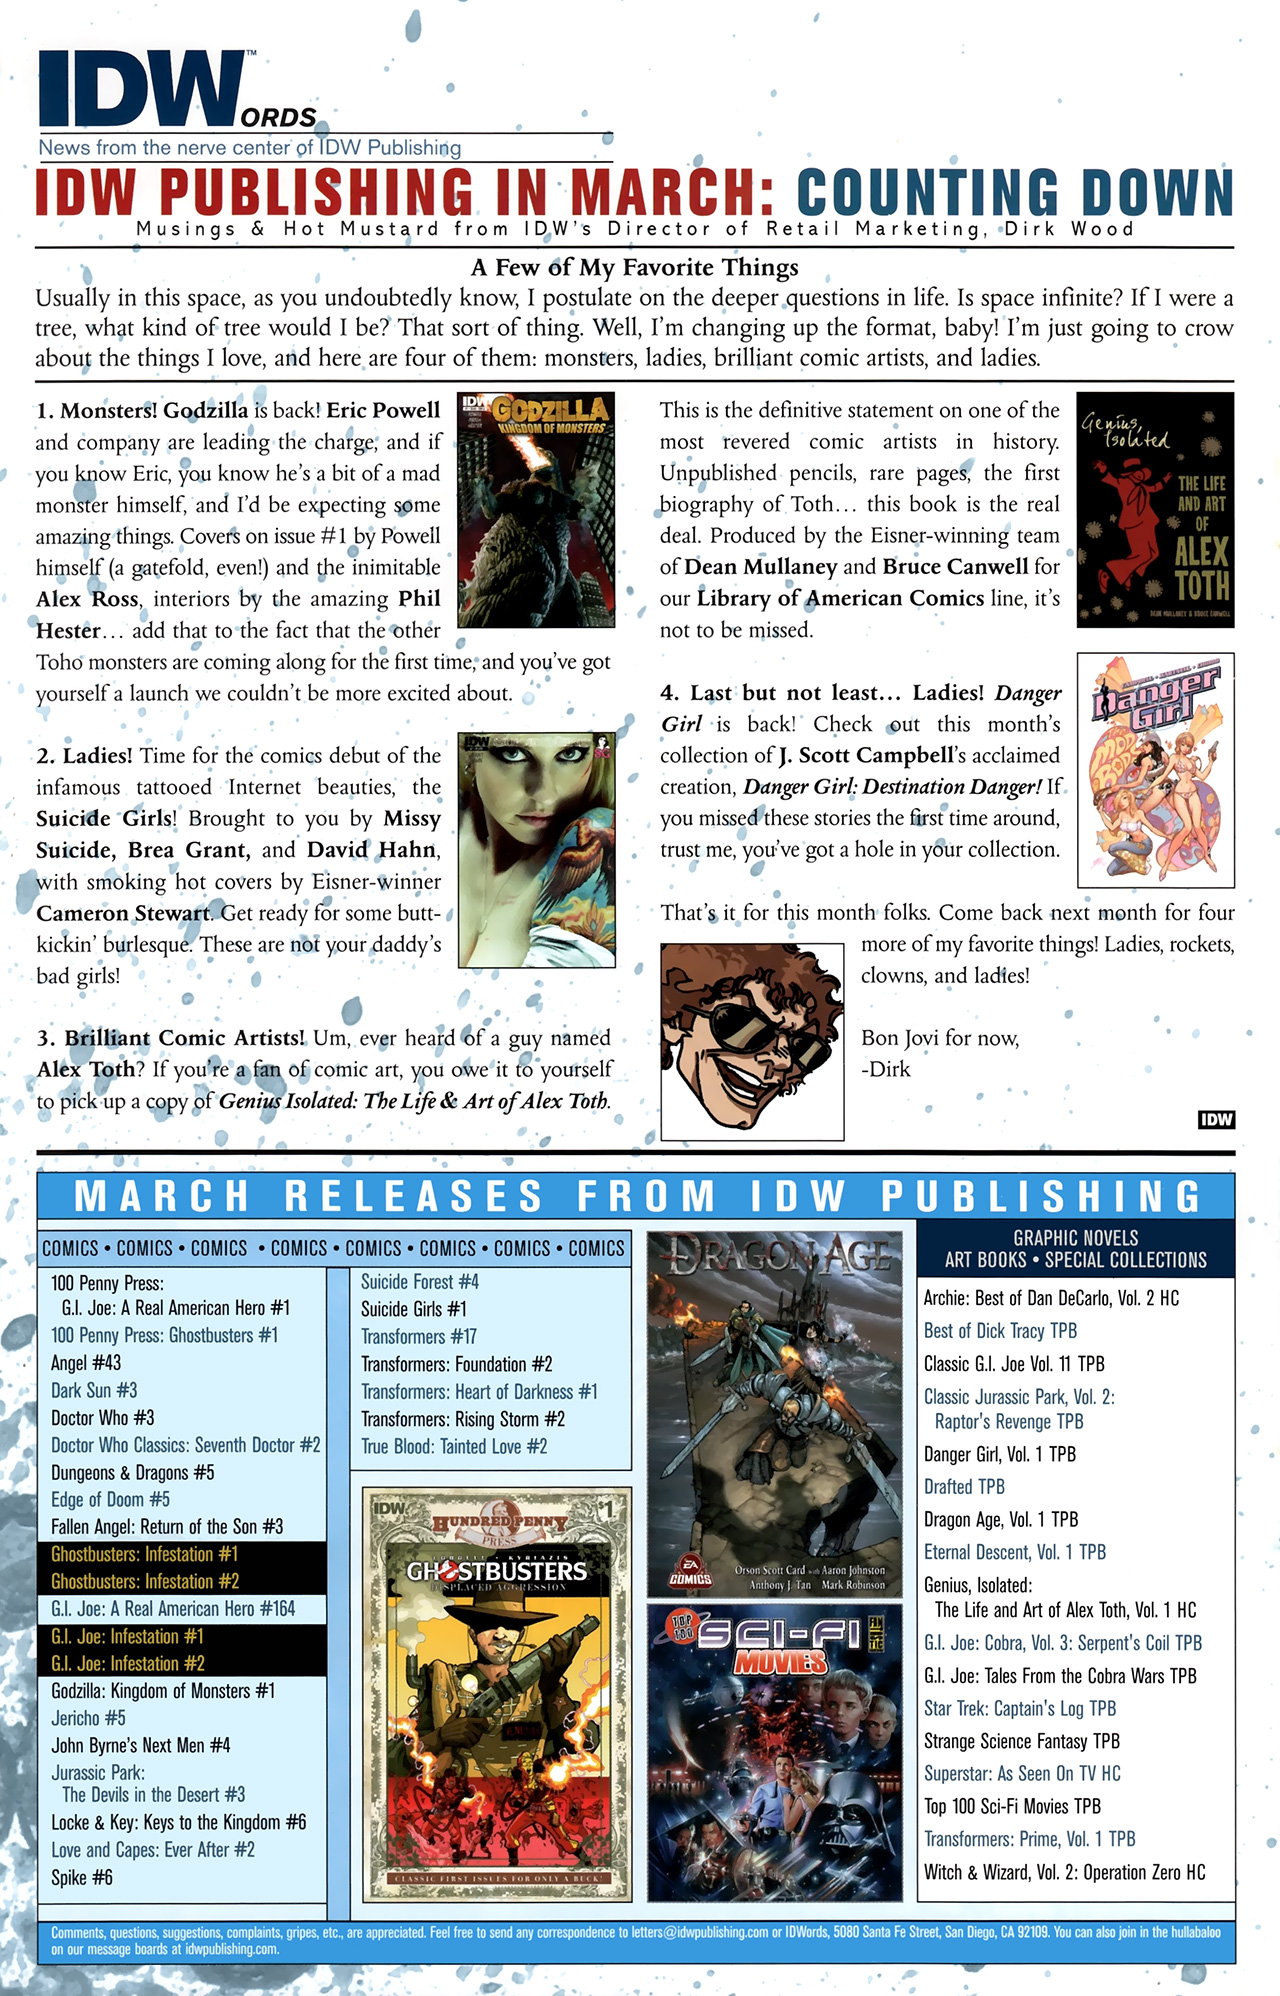 Read online Jurassic Park: The Devils in the Desert comic -  Issue #3 - 26